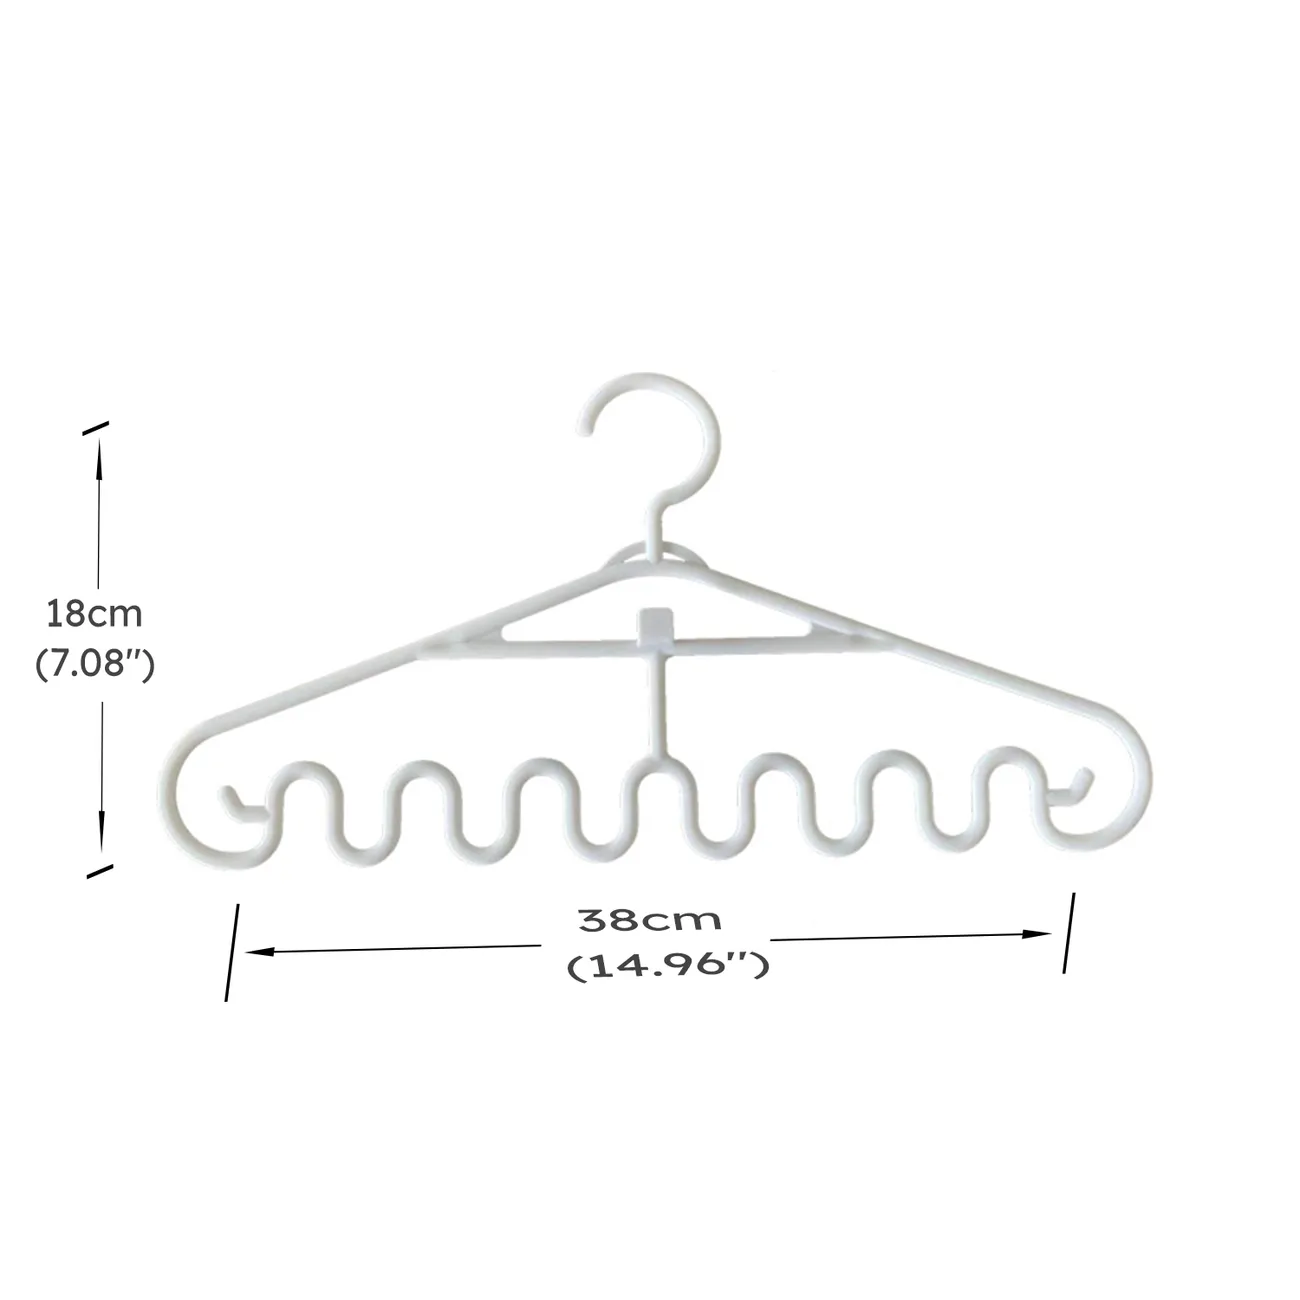 3 件裝波浪衣架防滑塑料多功能懸掛晾衣架用於領帶圍巾衣服袋 白色 big image 1